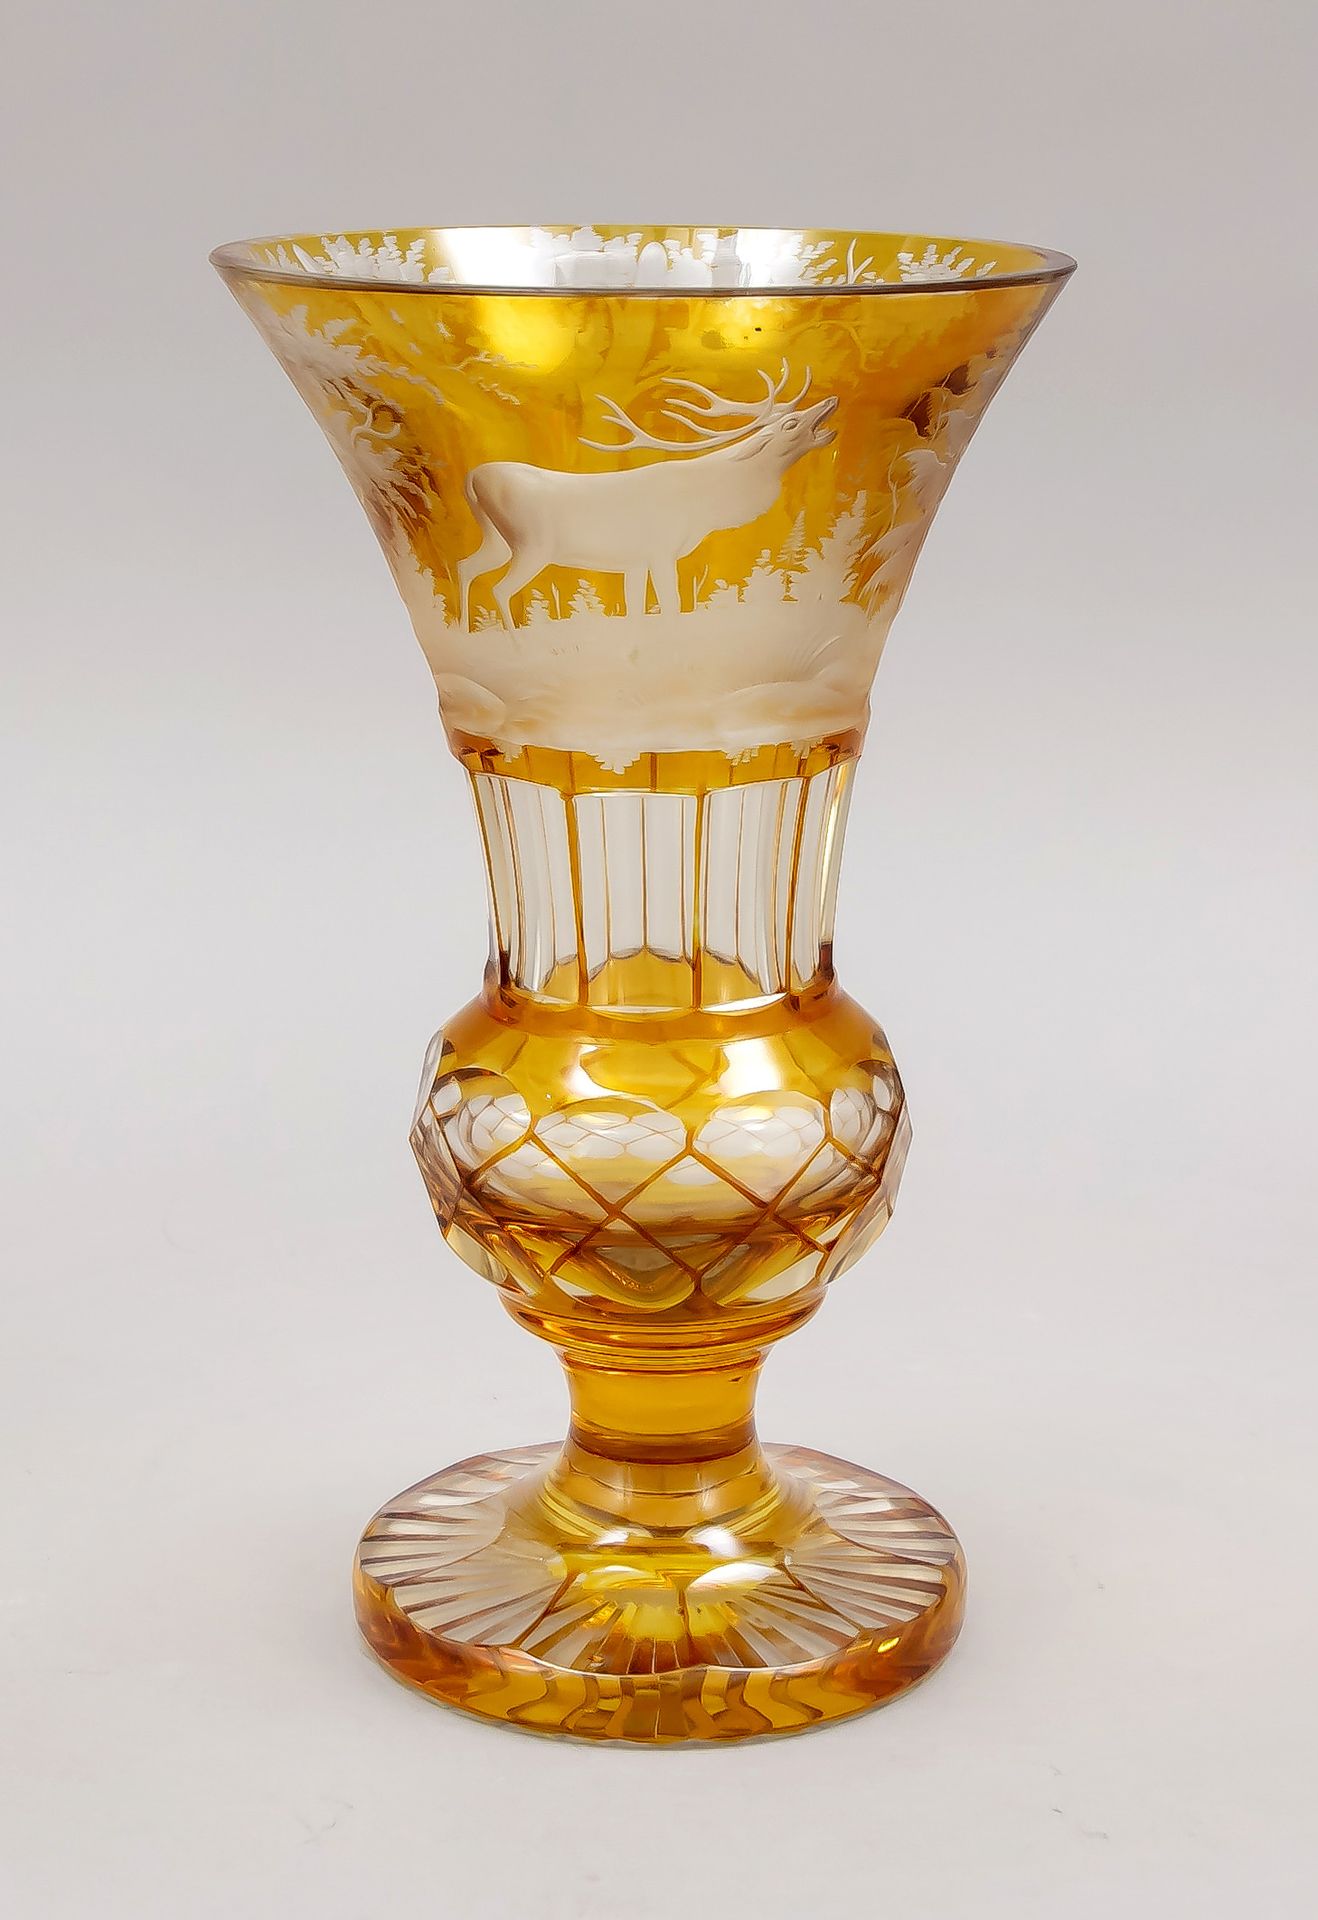 Null 花瓶，20世纪上半叶，圆形支架，短轴，瓶身下部呈球状，上部拓宽为车夫状，透明玻璃，主要是琥珀色的蚀刻，有丰富的切割装饰，风景与咆哮的鹿，高25.5厘米